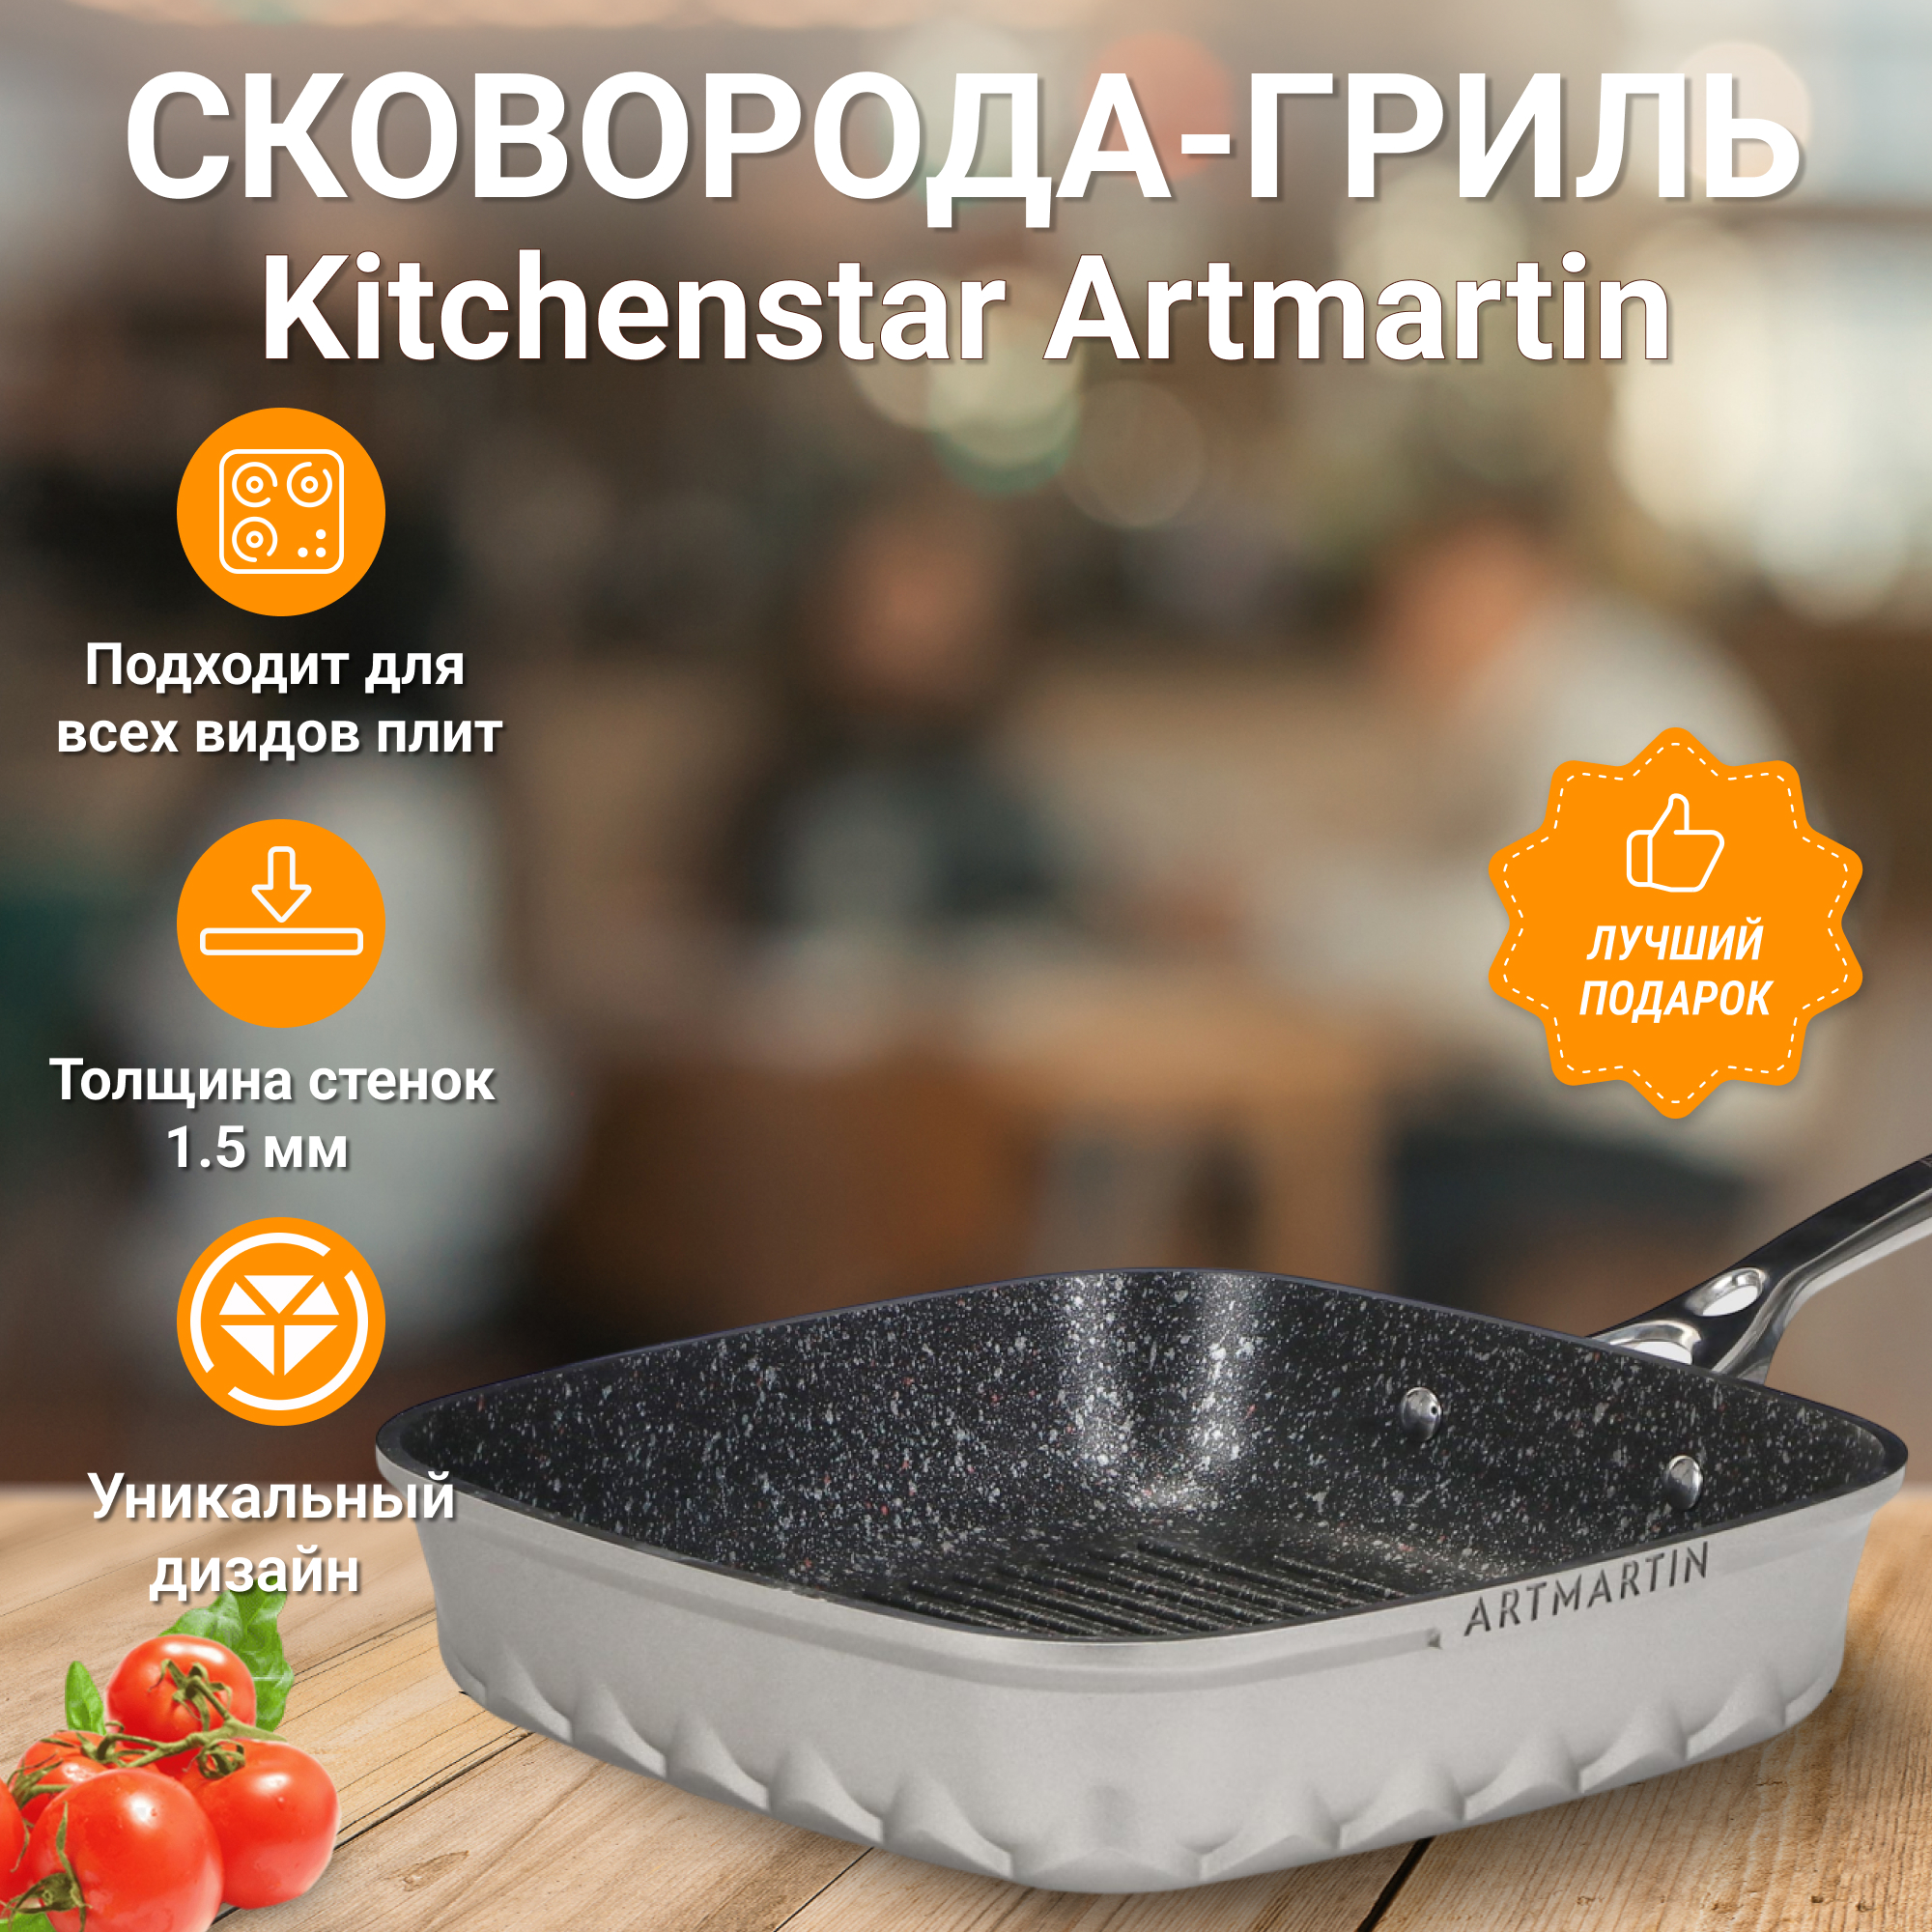 Сковорода-гриль Kitchen star Artmartin 26 см, цвет серый - фото 5